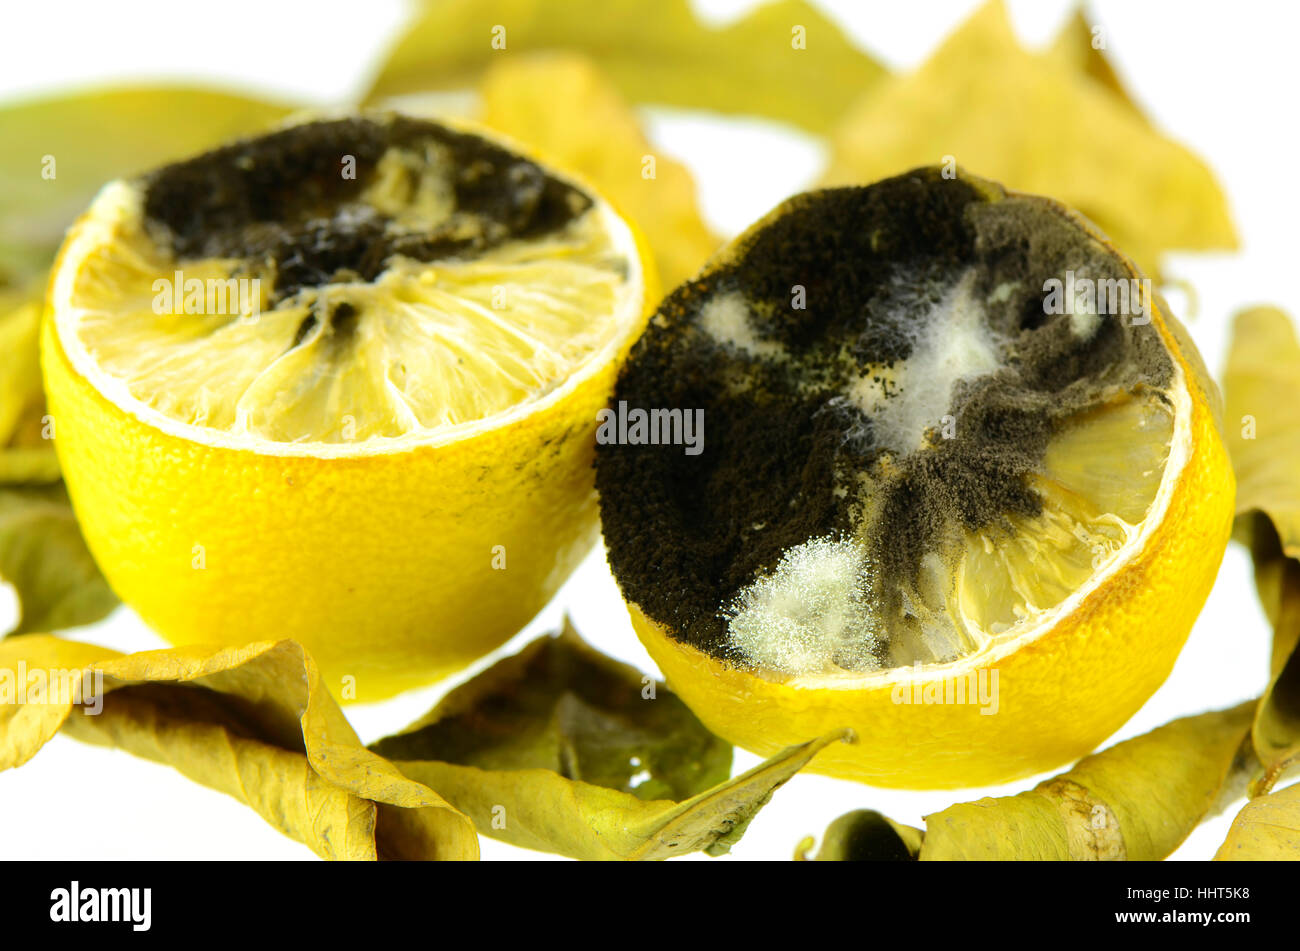 Rotting lemon fruit with black mold and white mold. Stock Photo